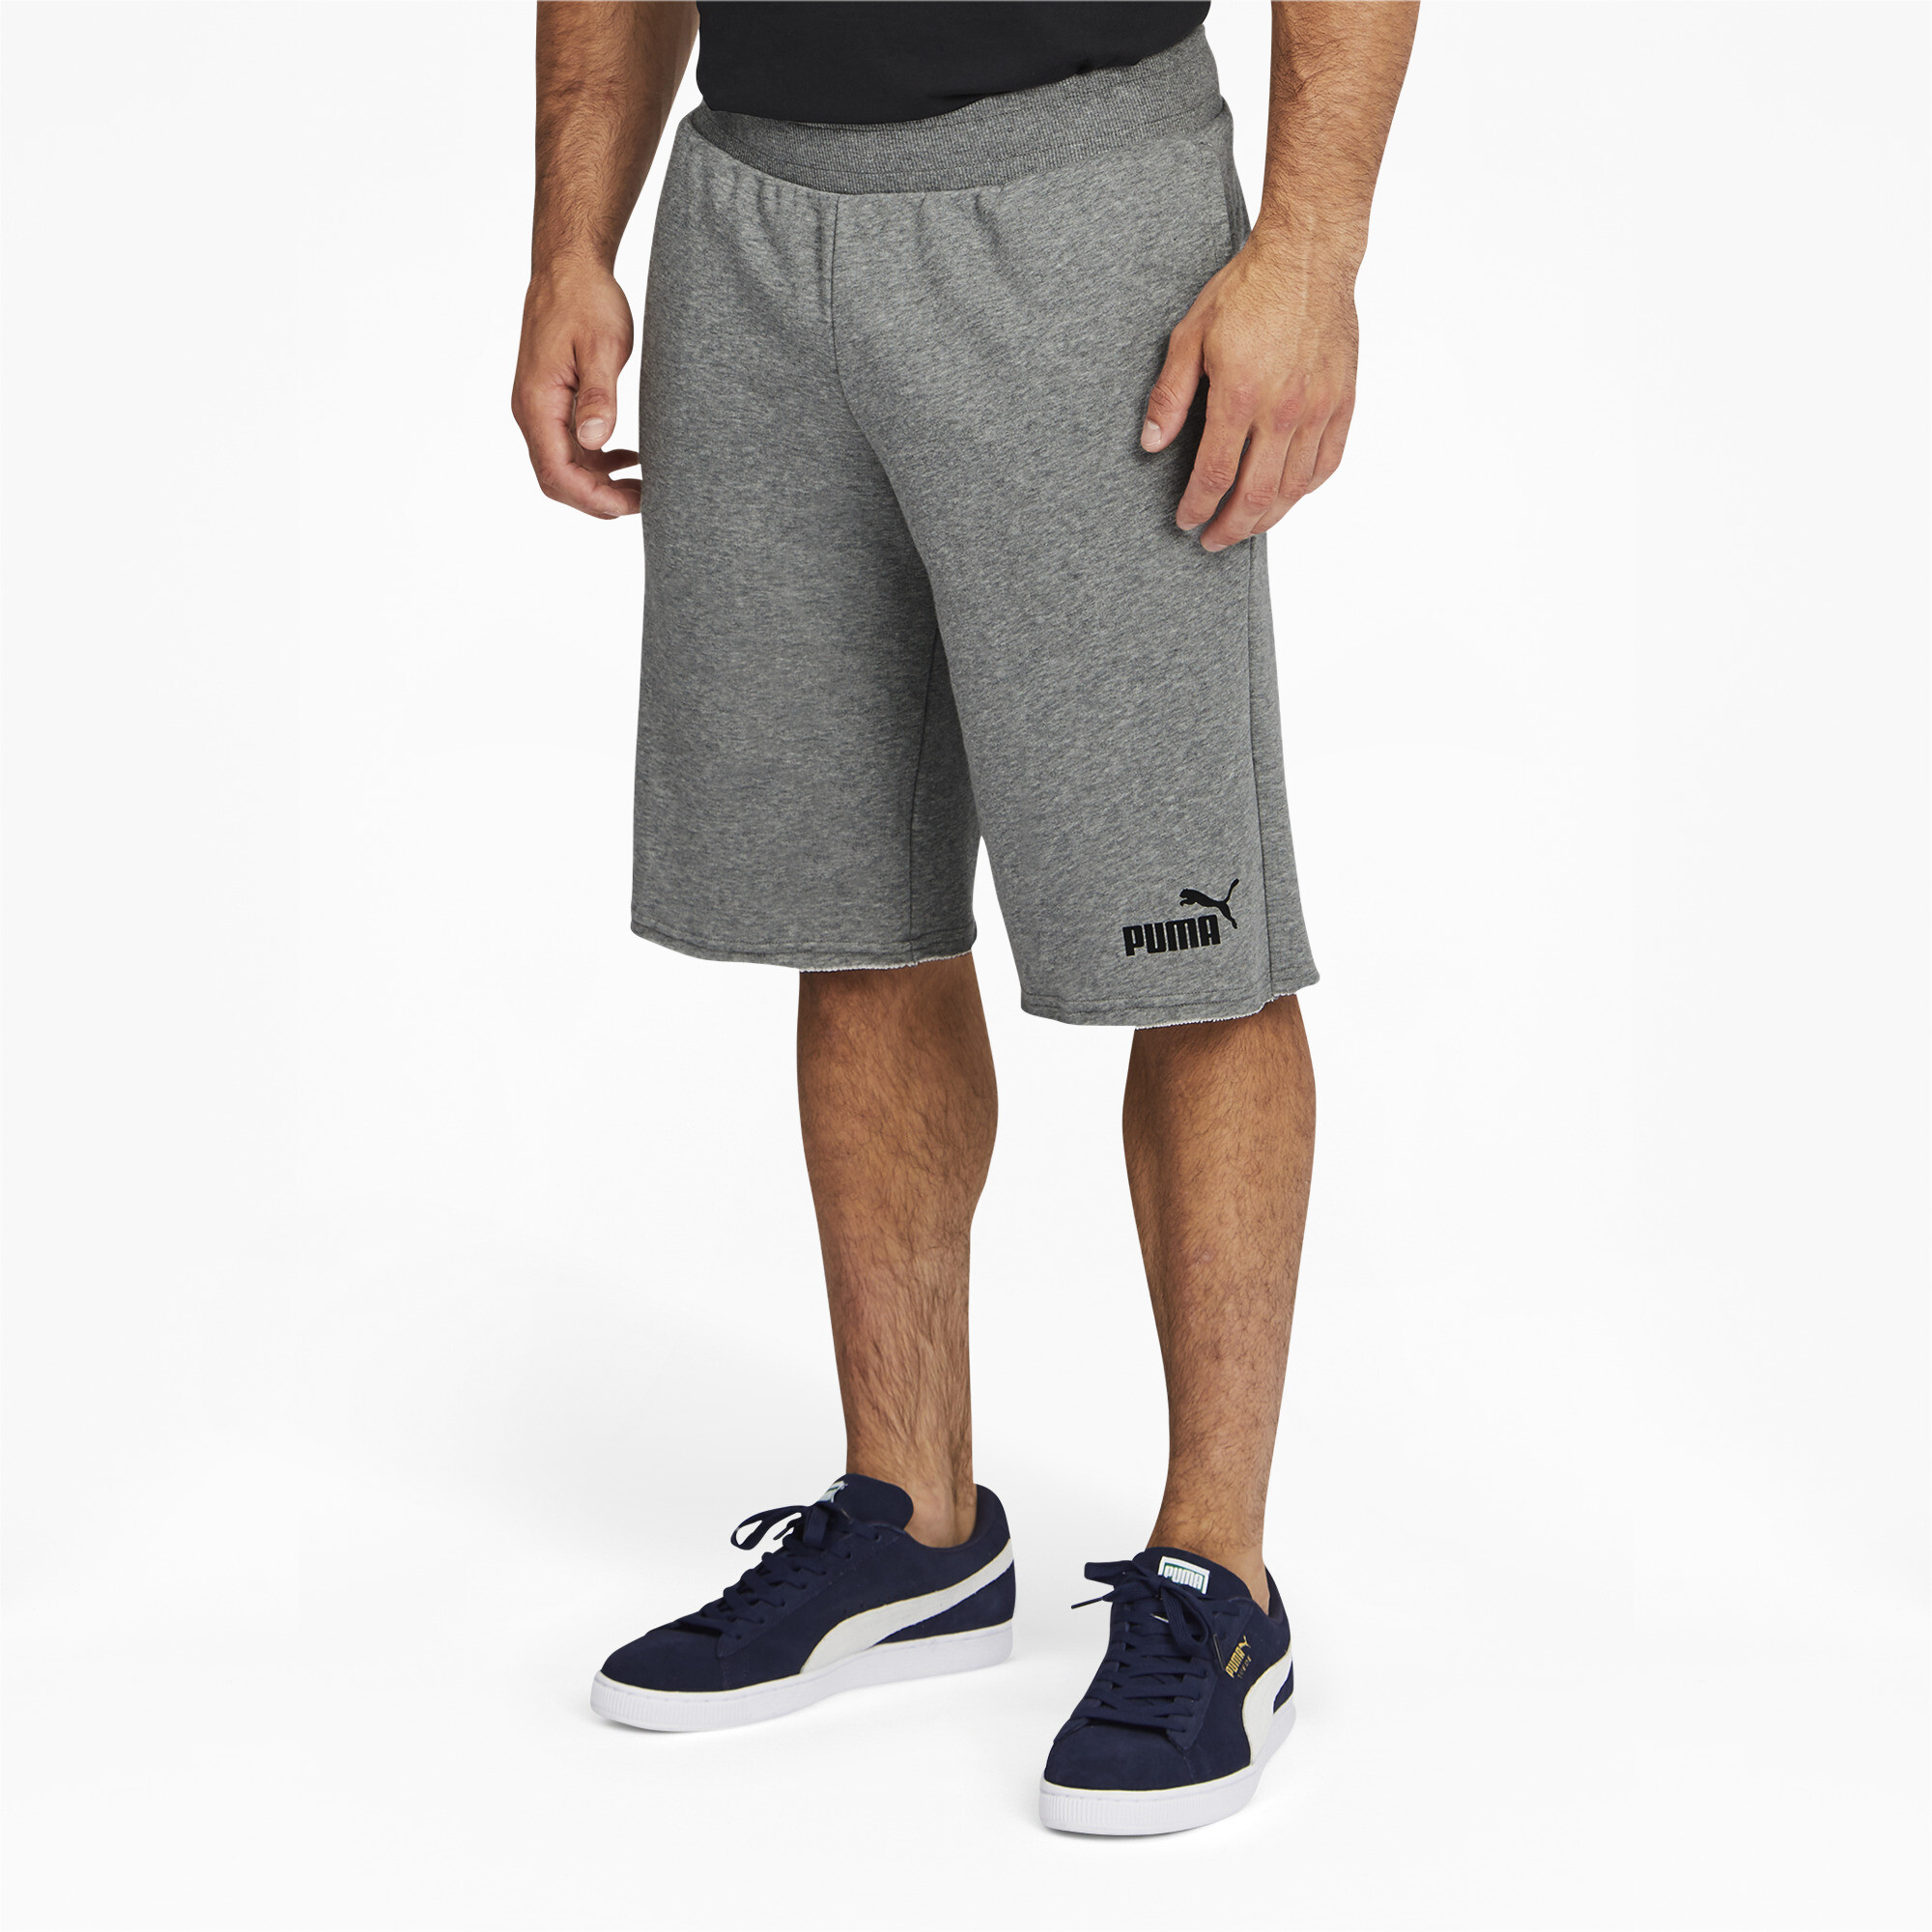 PUMA Men's Essentials+ Shorts | eBay